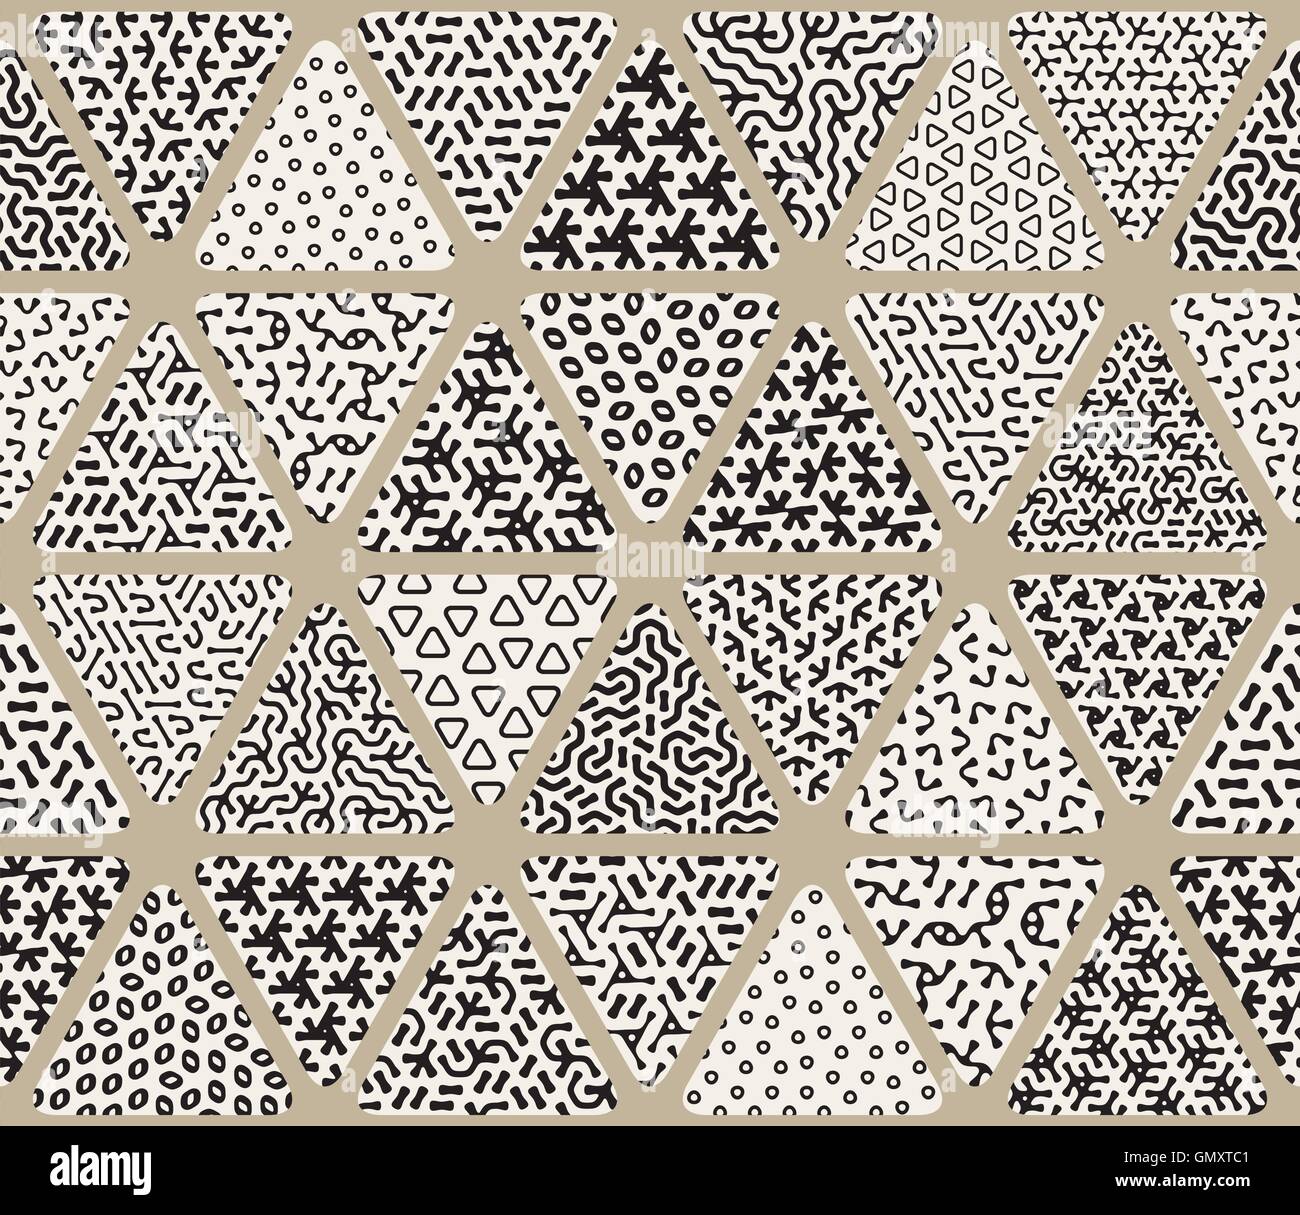 Vektor, nahtlose schwarz-weiß Dreieck Patchwork Fliesen mit durcheinander Muster gefüllt Stock Vektor